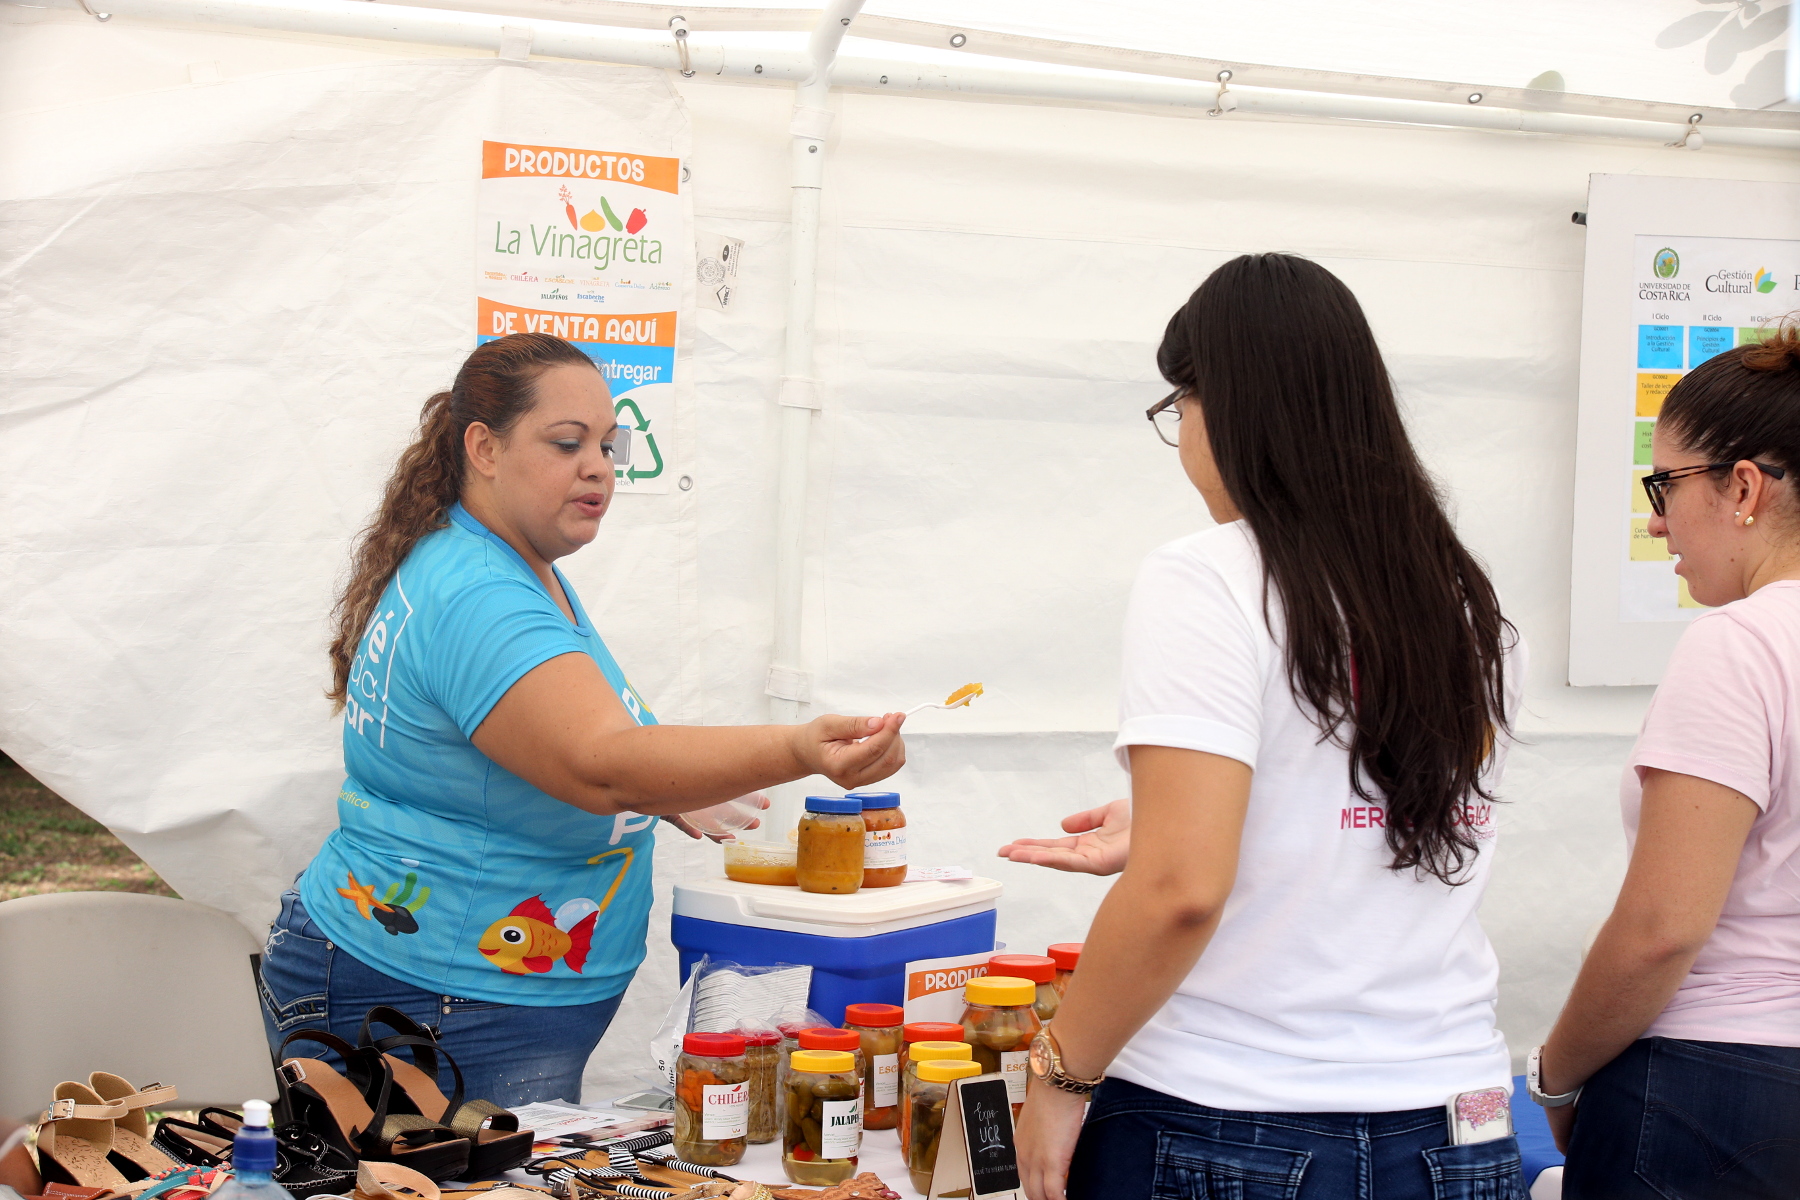 Mujeres emprendedoras de la zona presentan sus productos a las personas visitantes de la Expo.